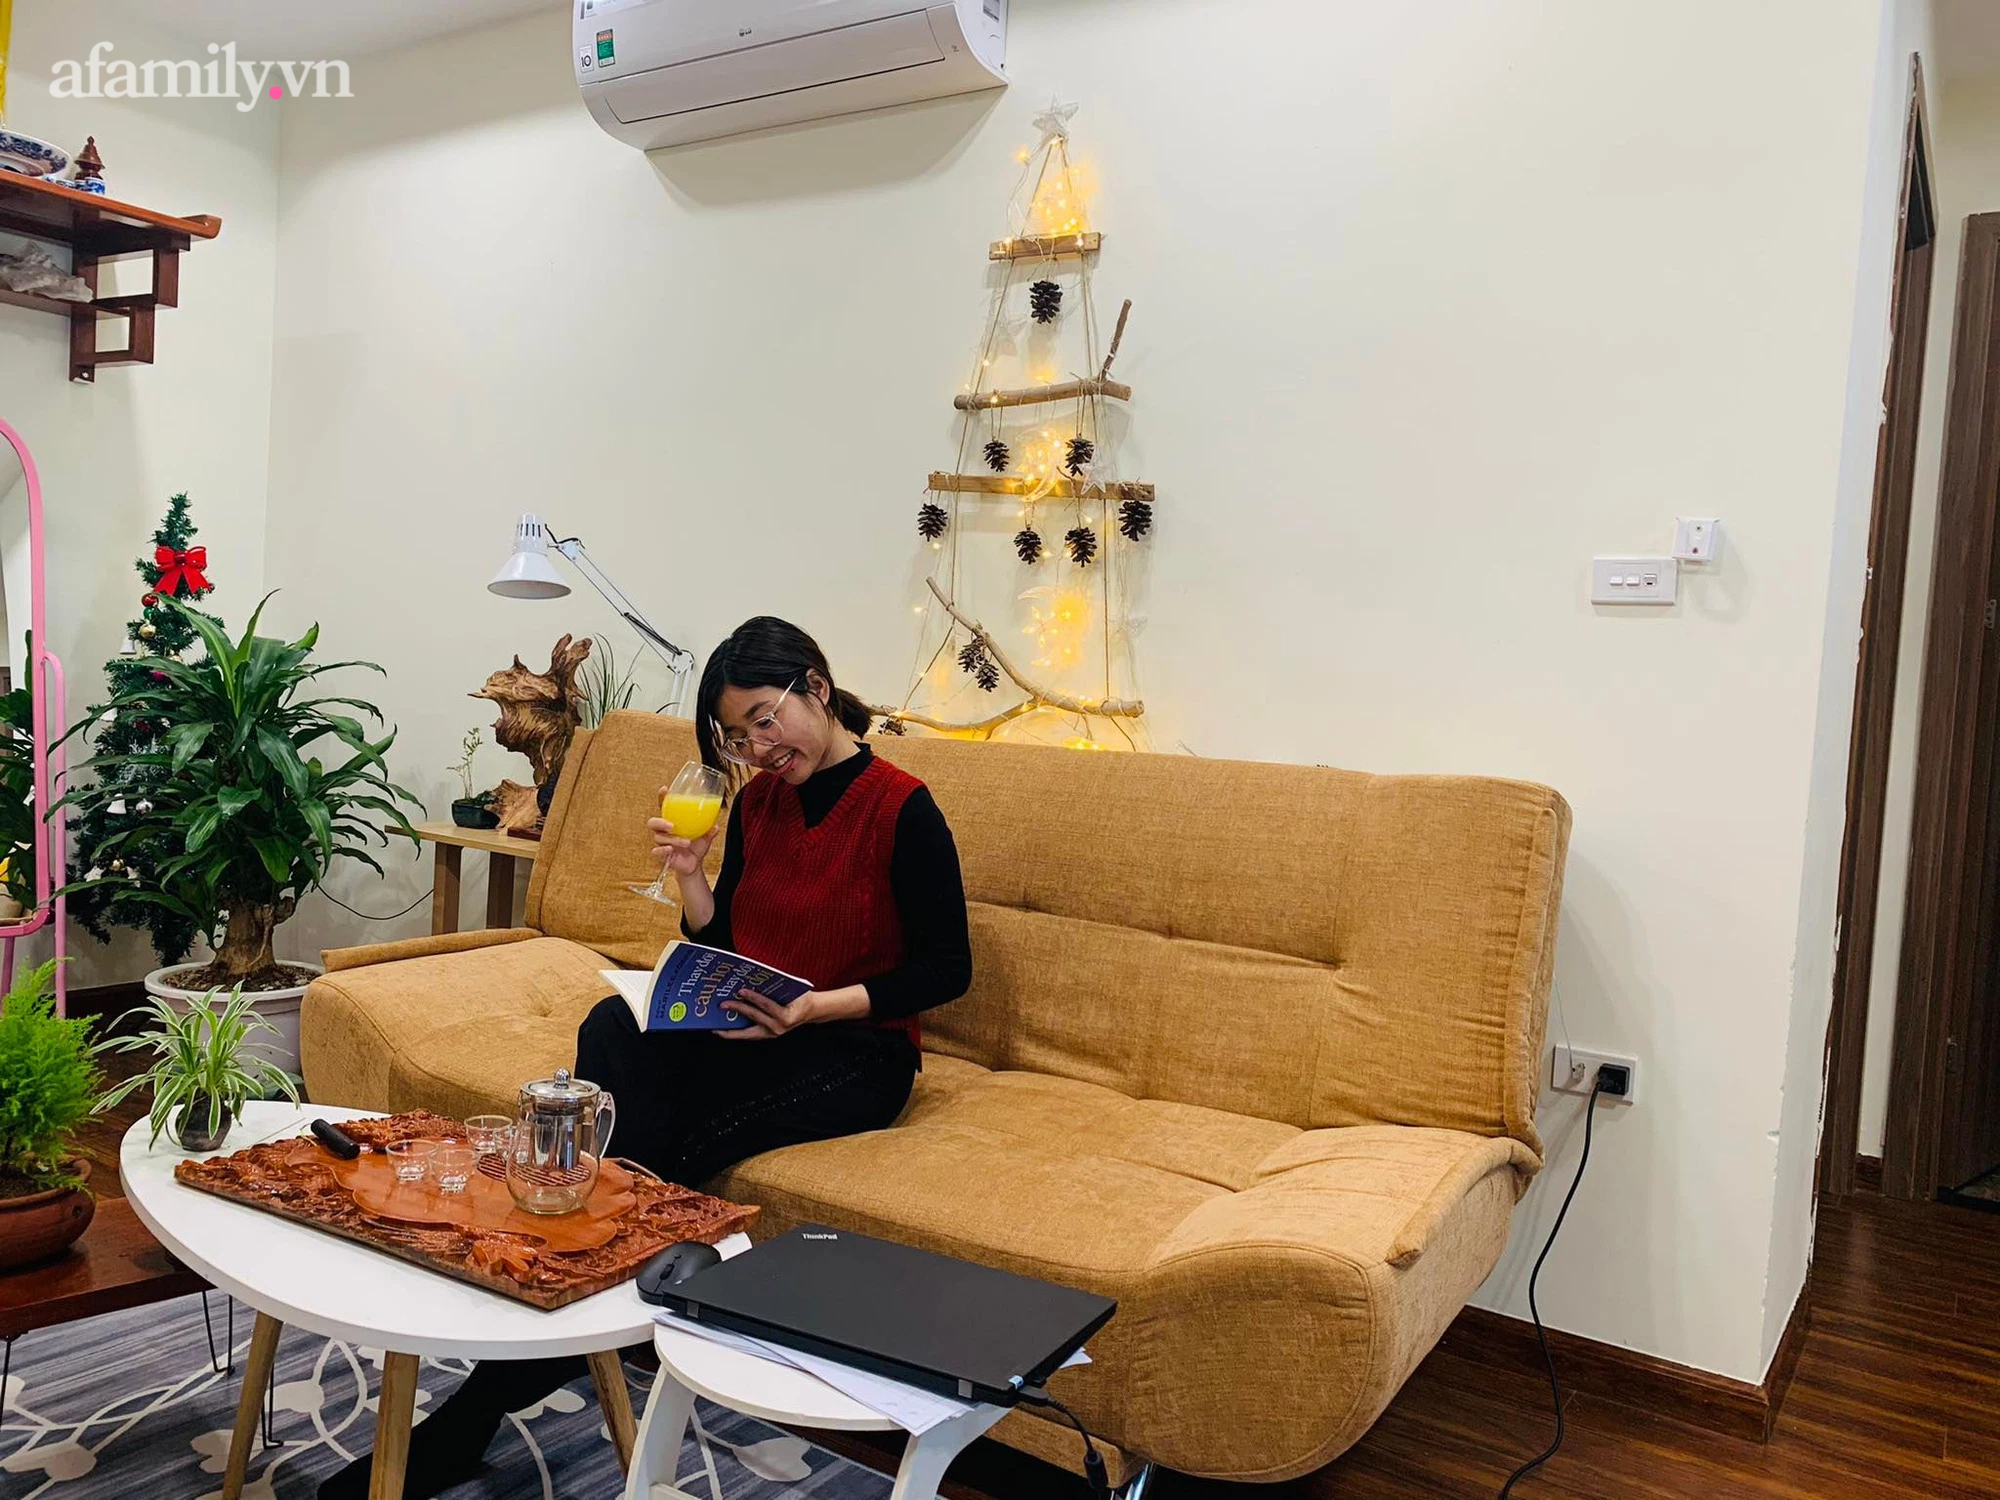 Trang trí căn hộ đón Noel với giá 350 ngàn đồng của cô giáo Hà Nội - Ảnh 4.